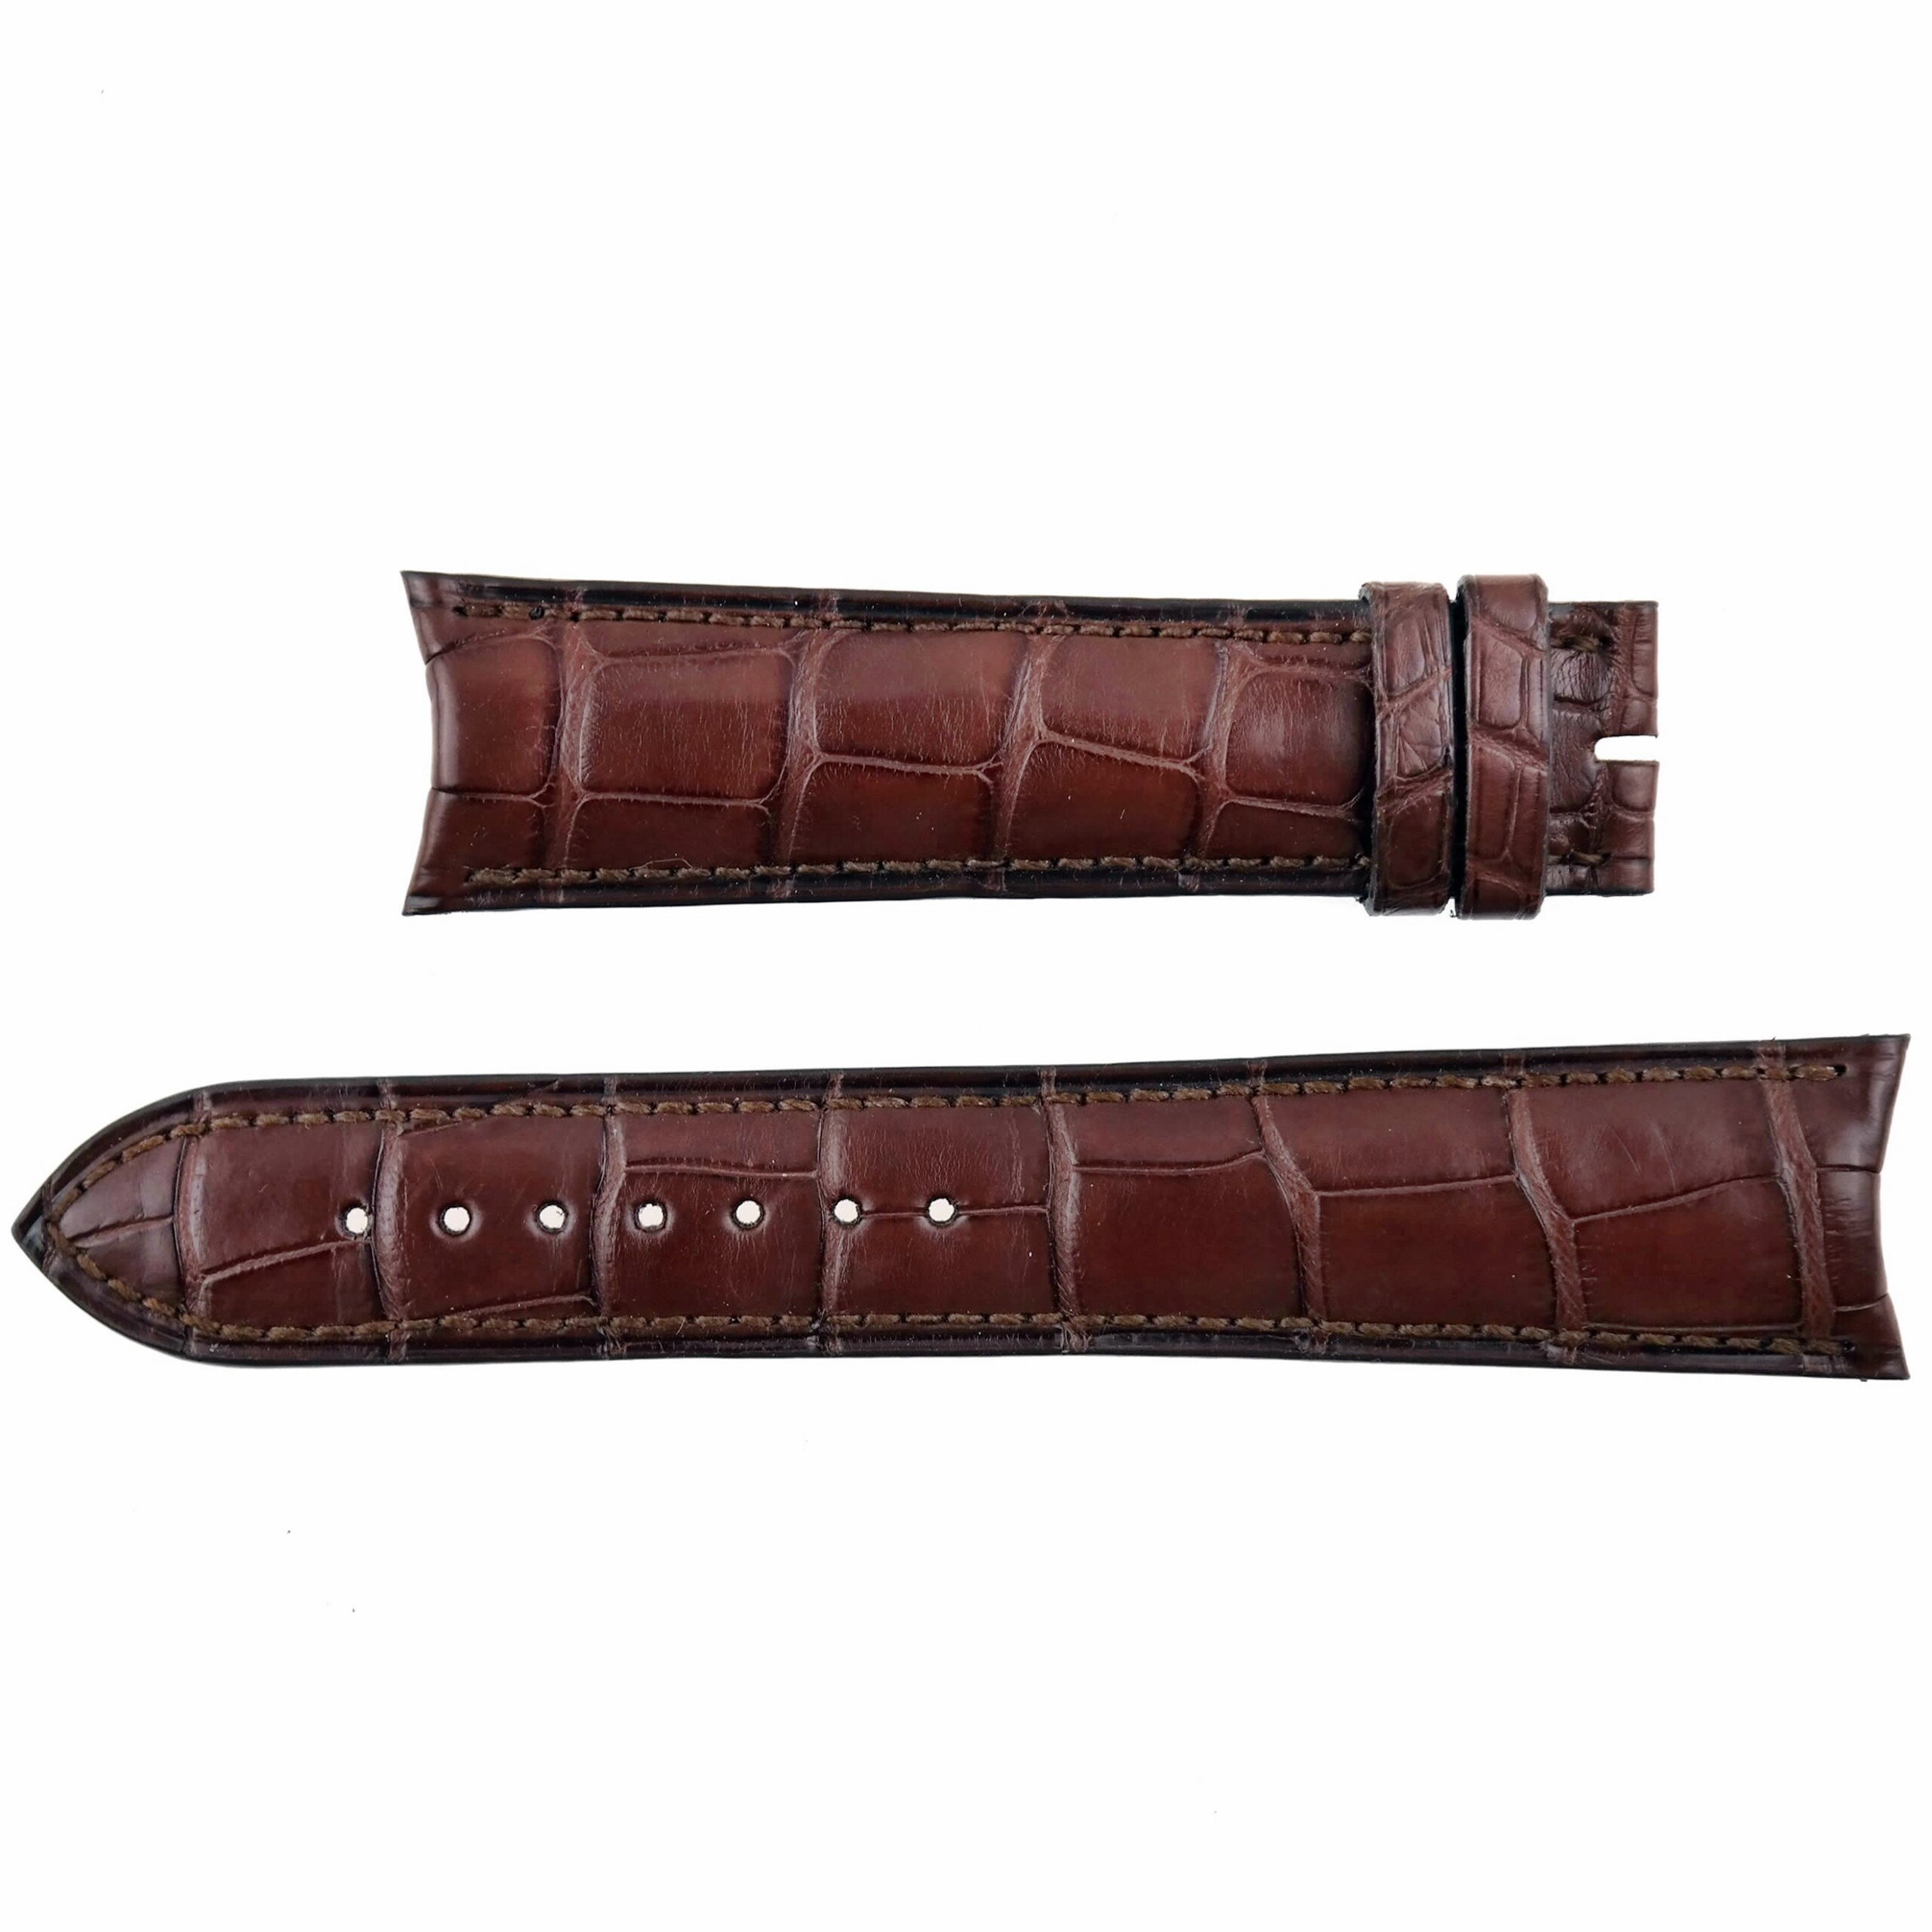 DANIEL ROTH - Luxury Watch Strap - 21 mm - Genuine Leather - BRC.11571